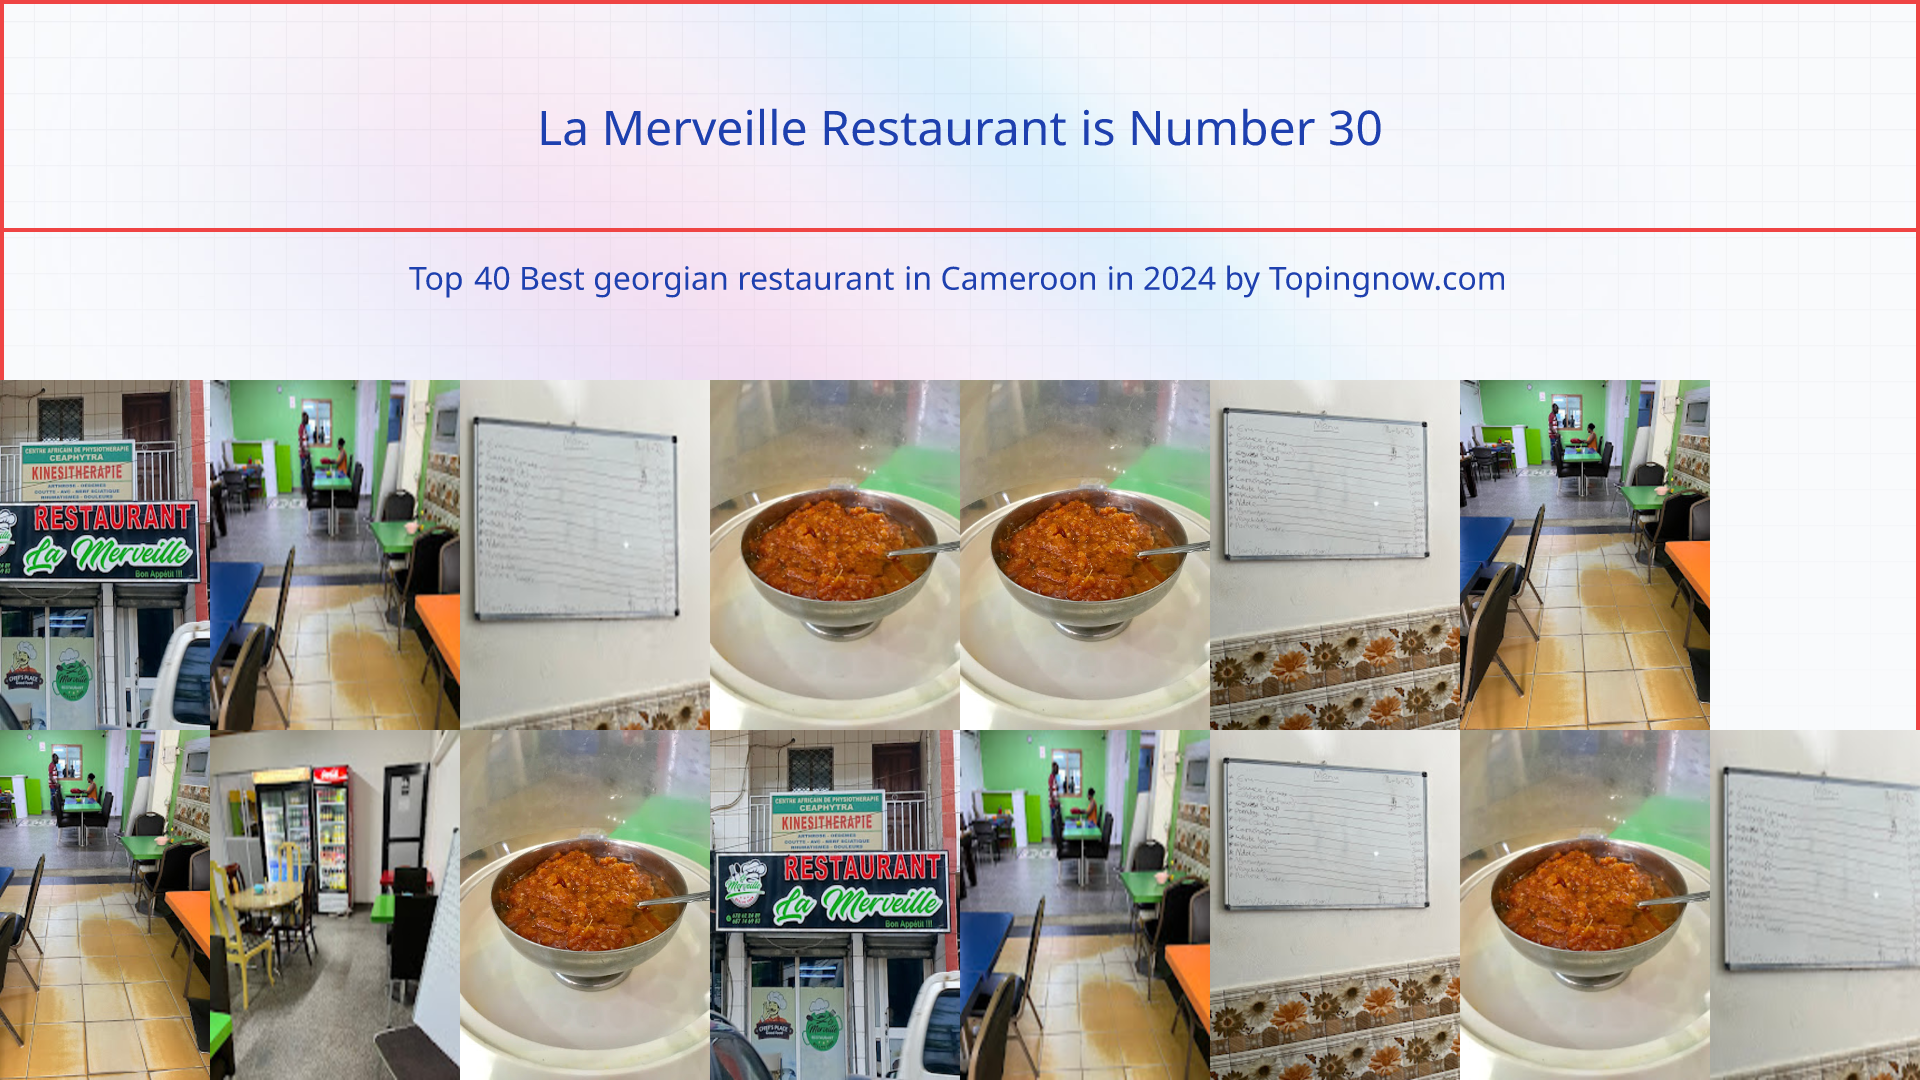 La Merveille Restaurant: Top 40 Best georgian restaurant in Cameroon in 2024